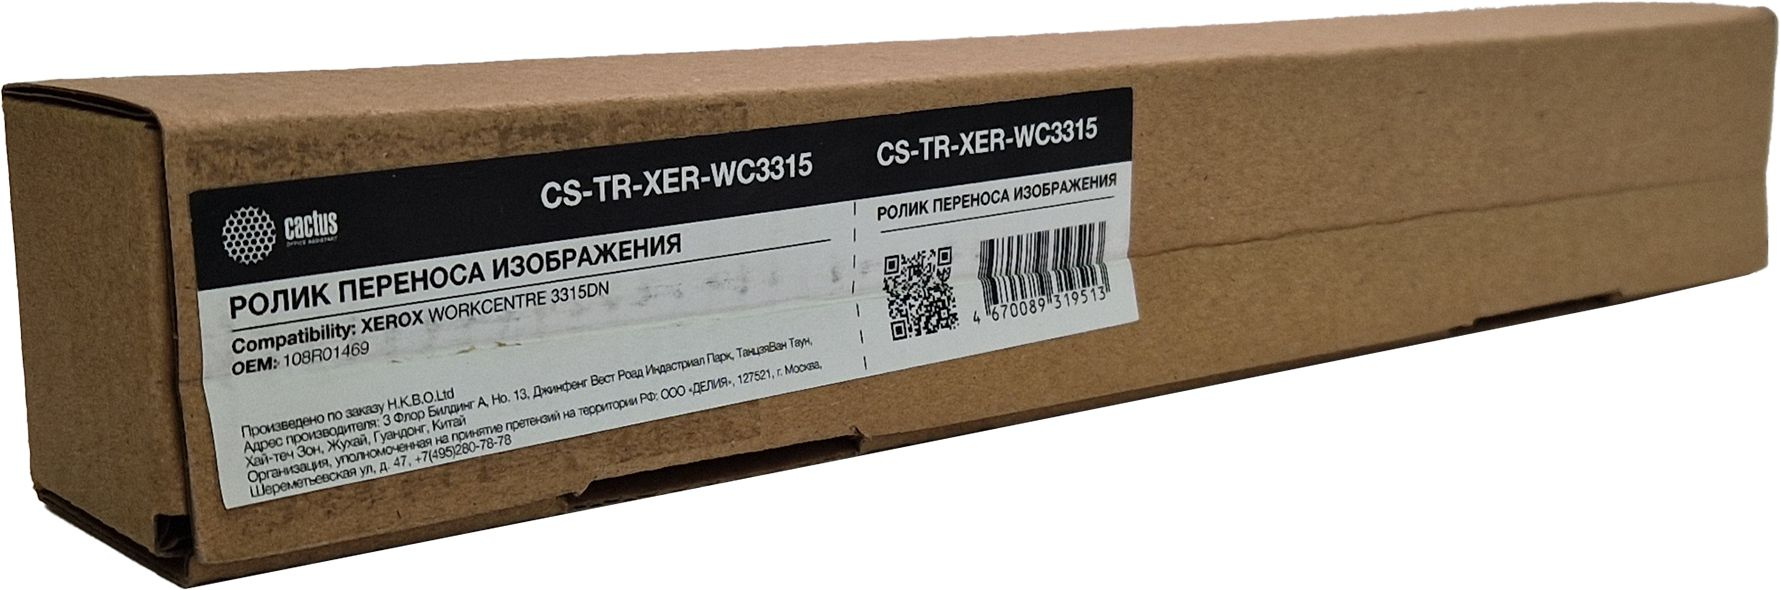 Ролик переноса Cactus CS-TR-XER-WC3315 (108R01469) для Xerox WC 3330/3335/3345